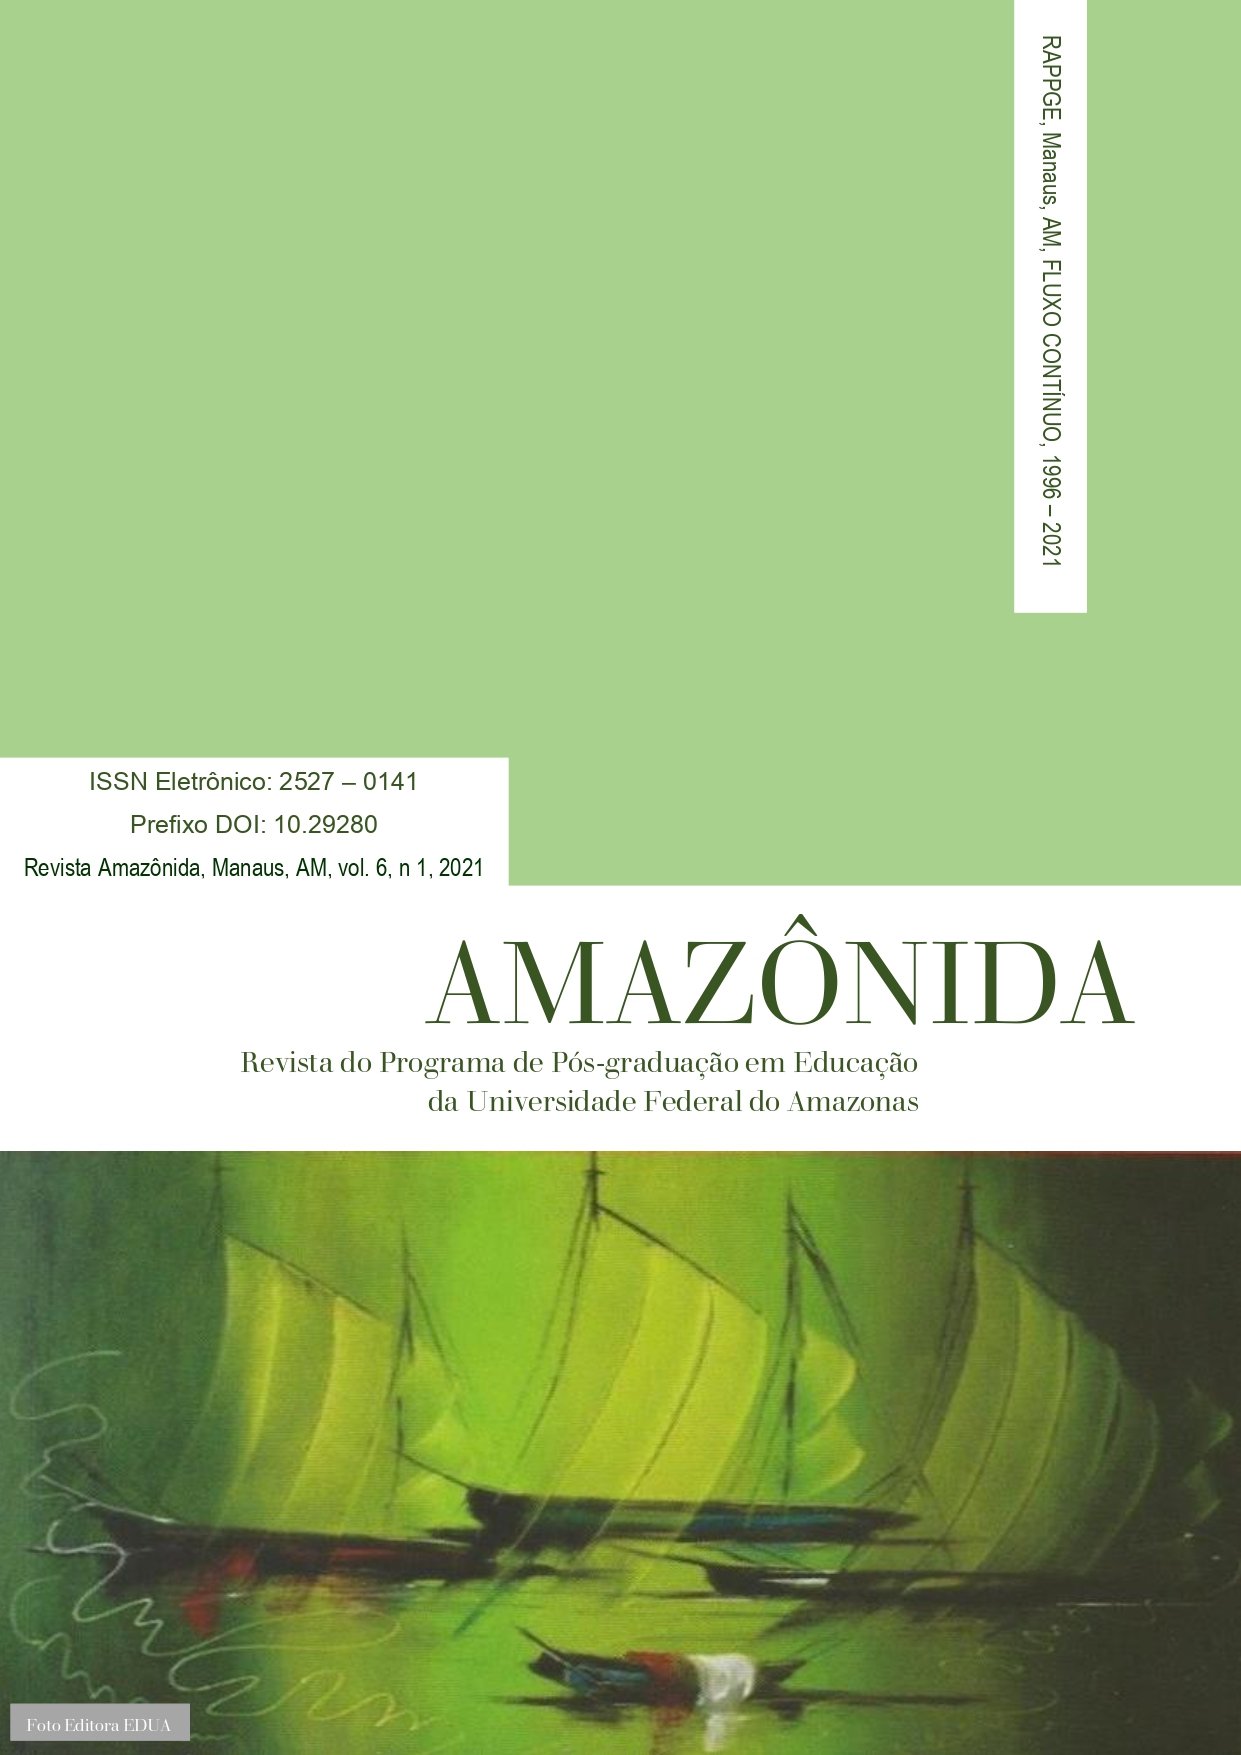 					View Vol. 6 No. 01 (2021): Revista Amazônida: Revista do Programa de Pós-Graduação em Educação da Universidade Federal do Amazonas
				